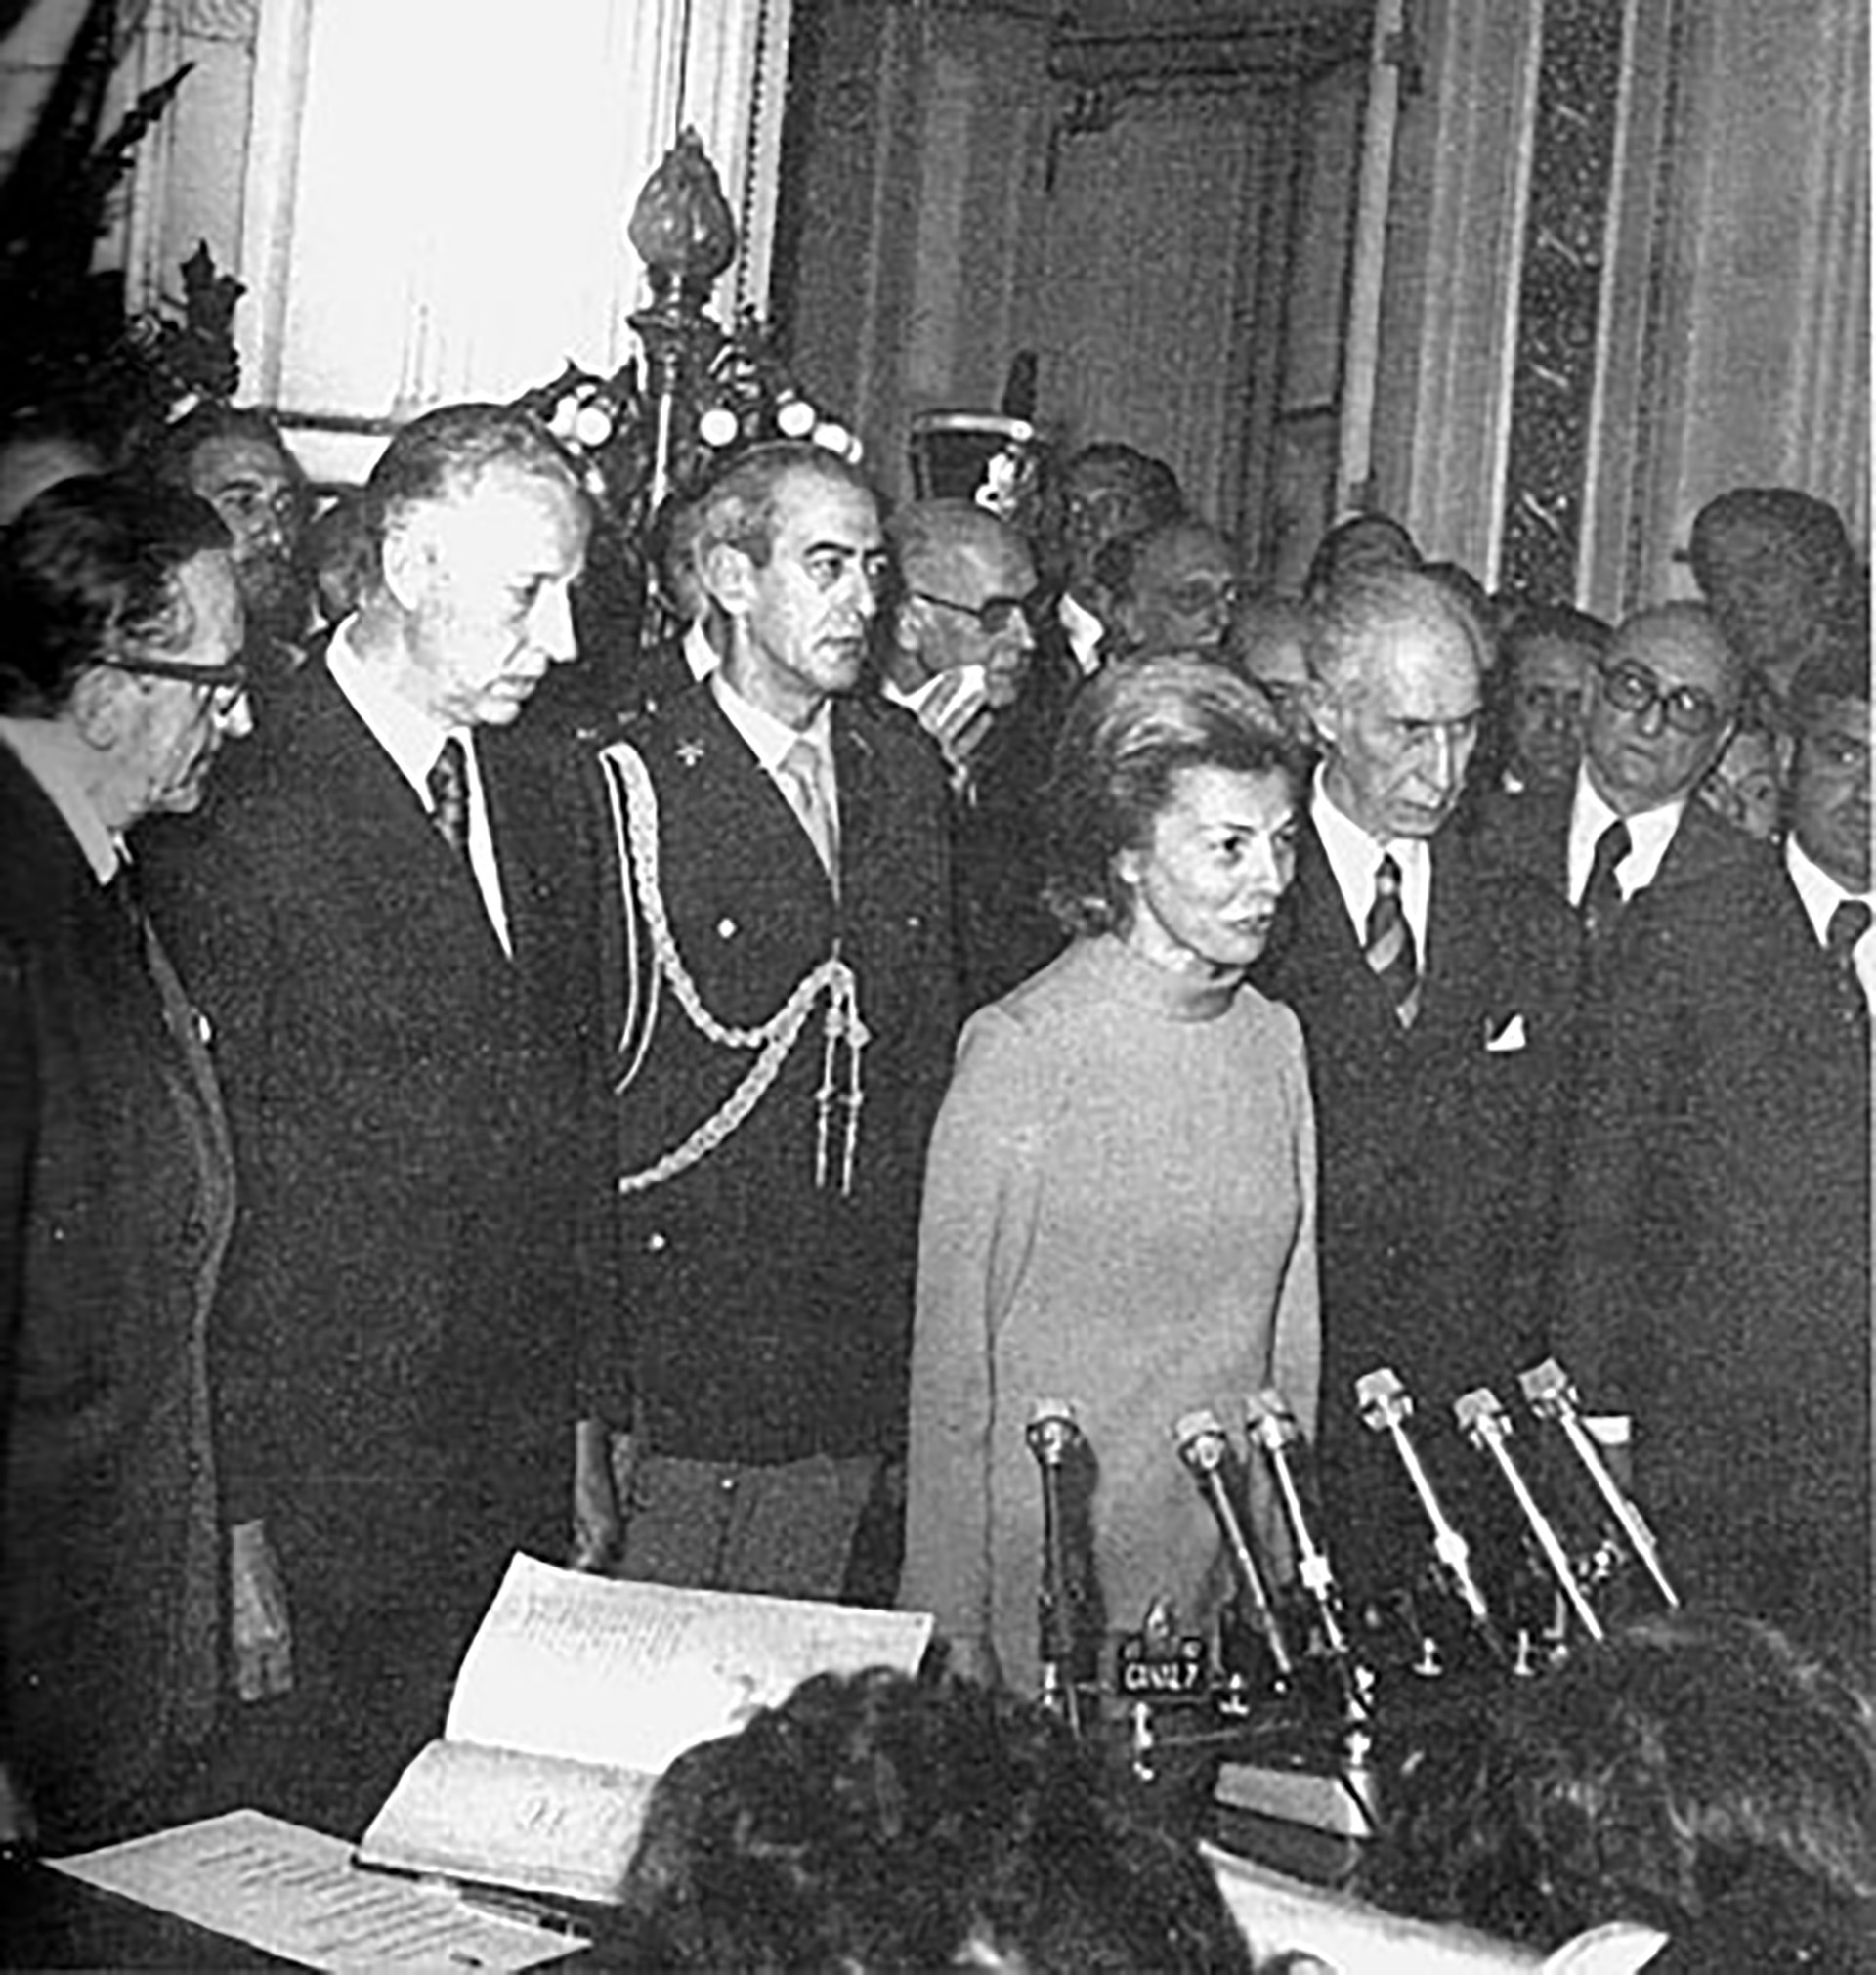 En septiembre de 1975, luego de la crisis militar la señora de Perón se tomó una licencia en Ascochinga, Córdoba, y el senador Ítalo Luder la reemplazó. Su retorno al poder en octubre marcó el comienzo de la conspiración y en marzo del año siguiente fue derrocada.